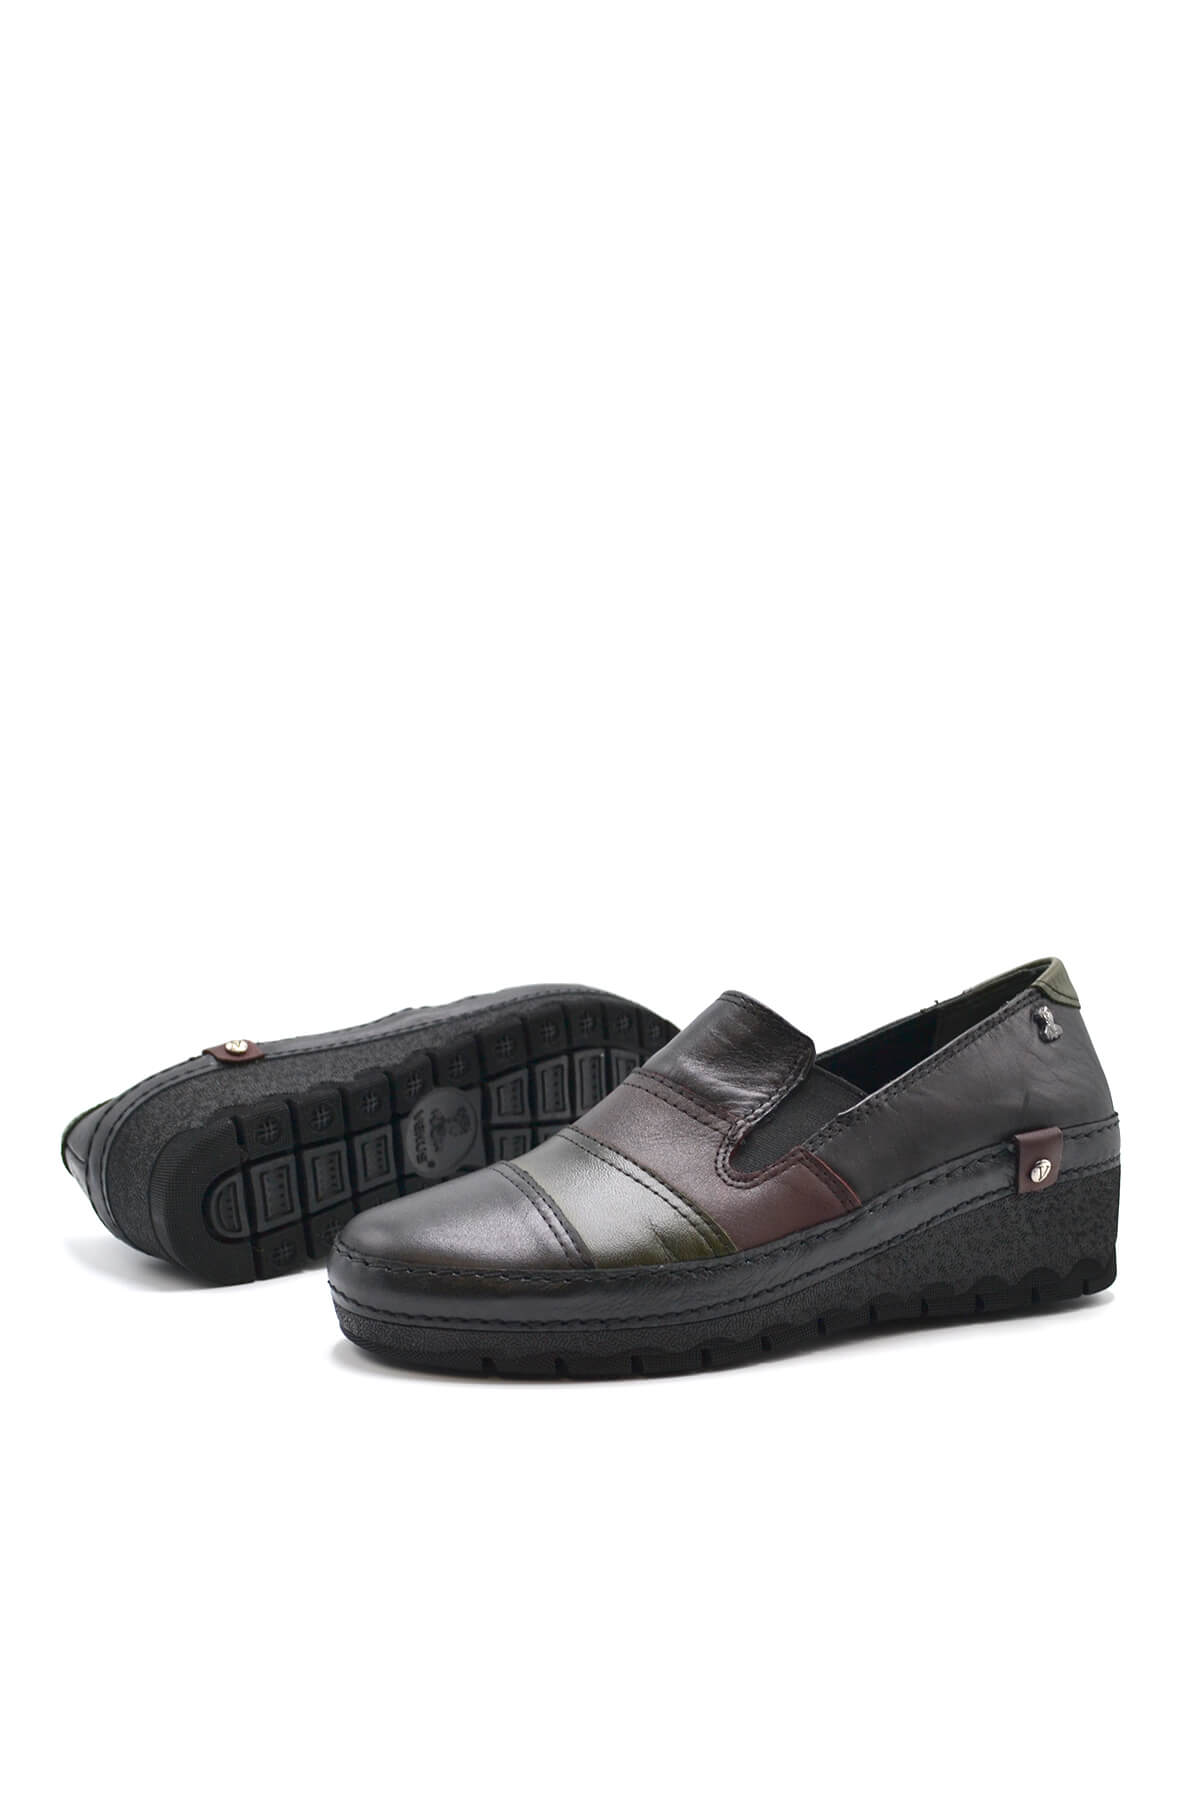 Kadın Comfort Deri Ayakkabı Siyah 2213507K - Thumbnail